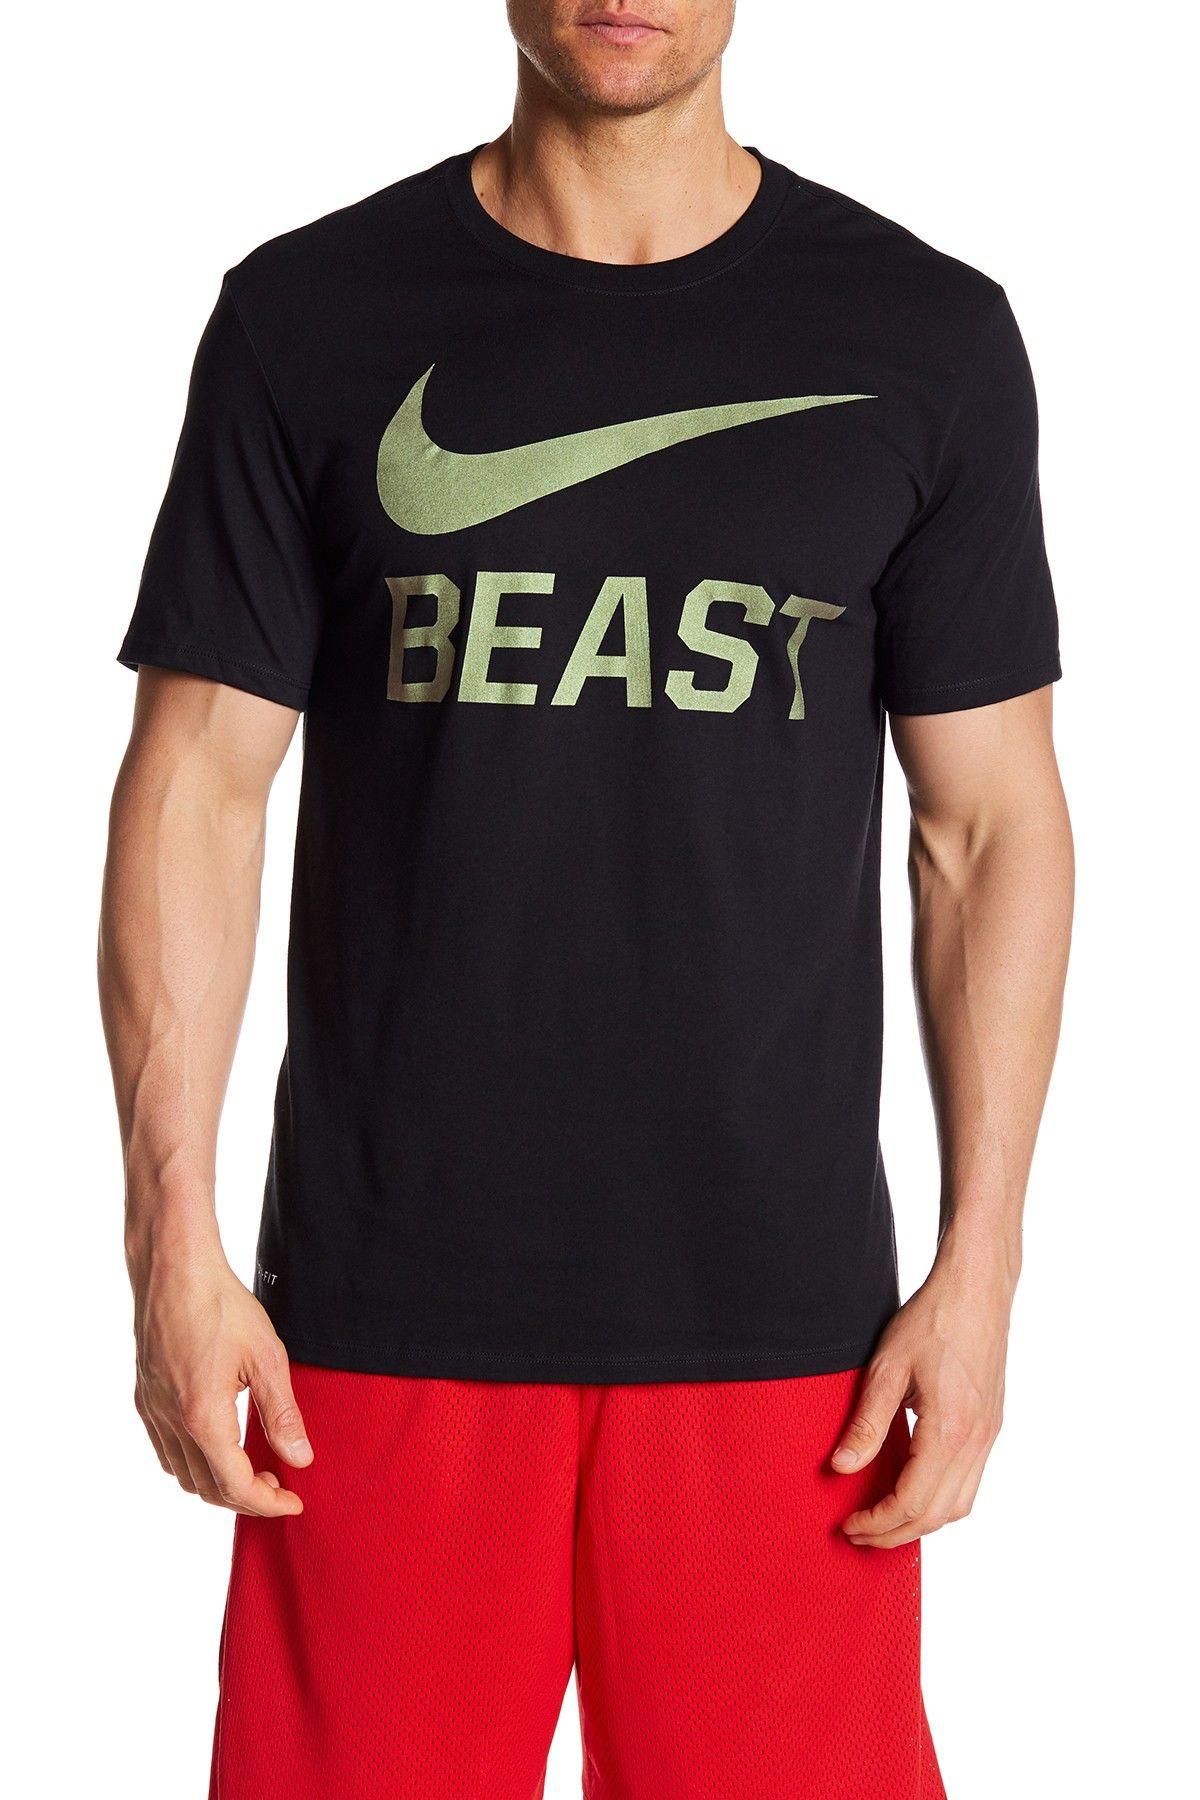 Nike Beast Logo - Nike | Swoosh Beast Athletic Cut Tee | Nordstrom Rack